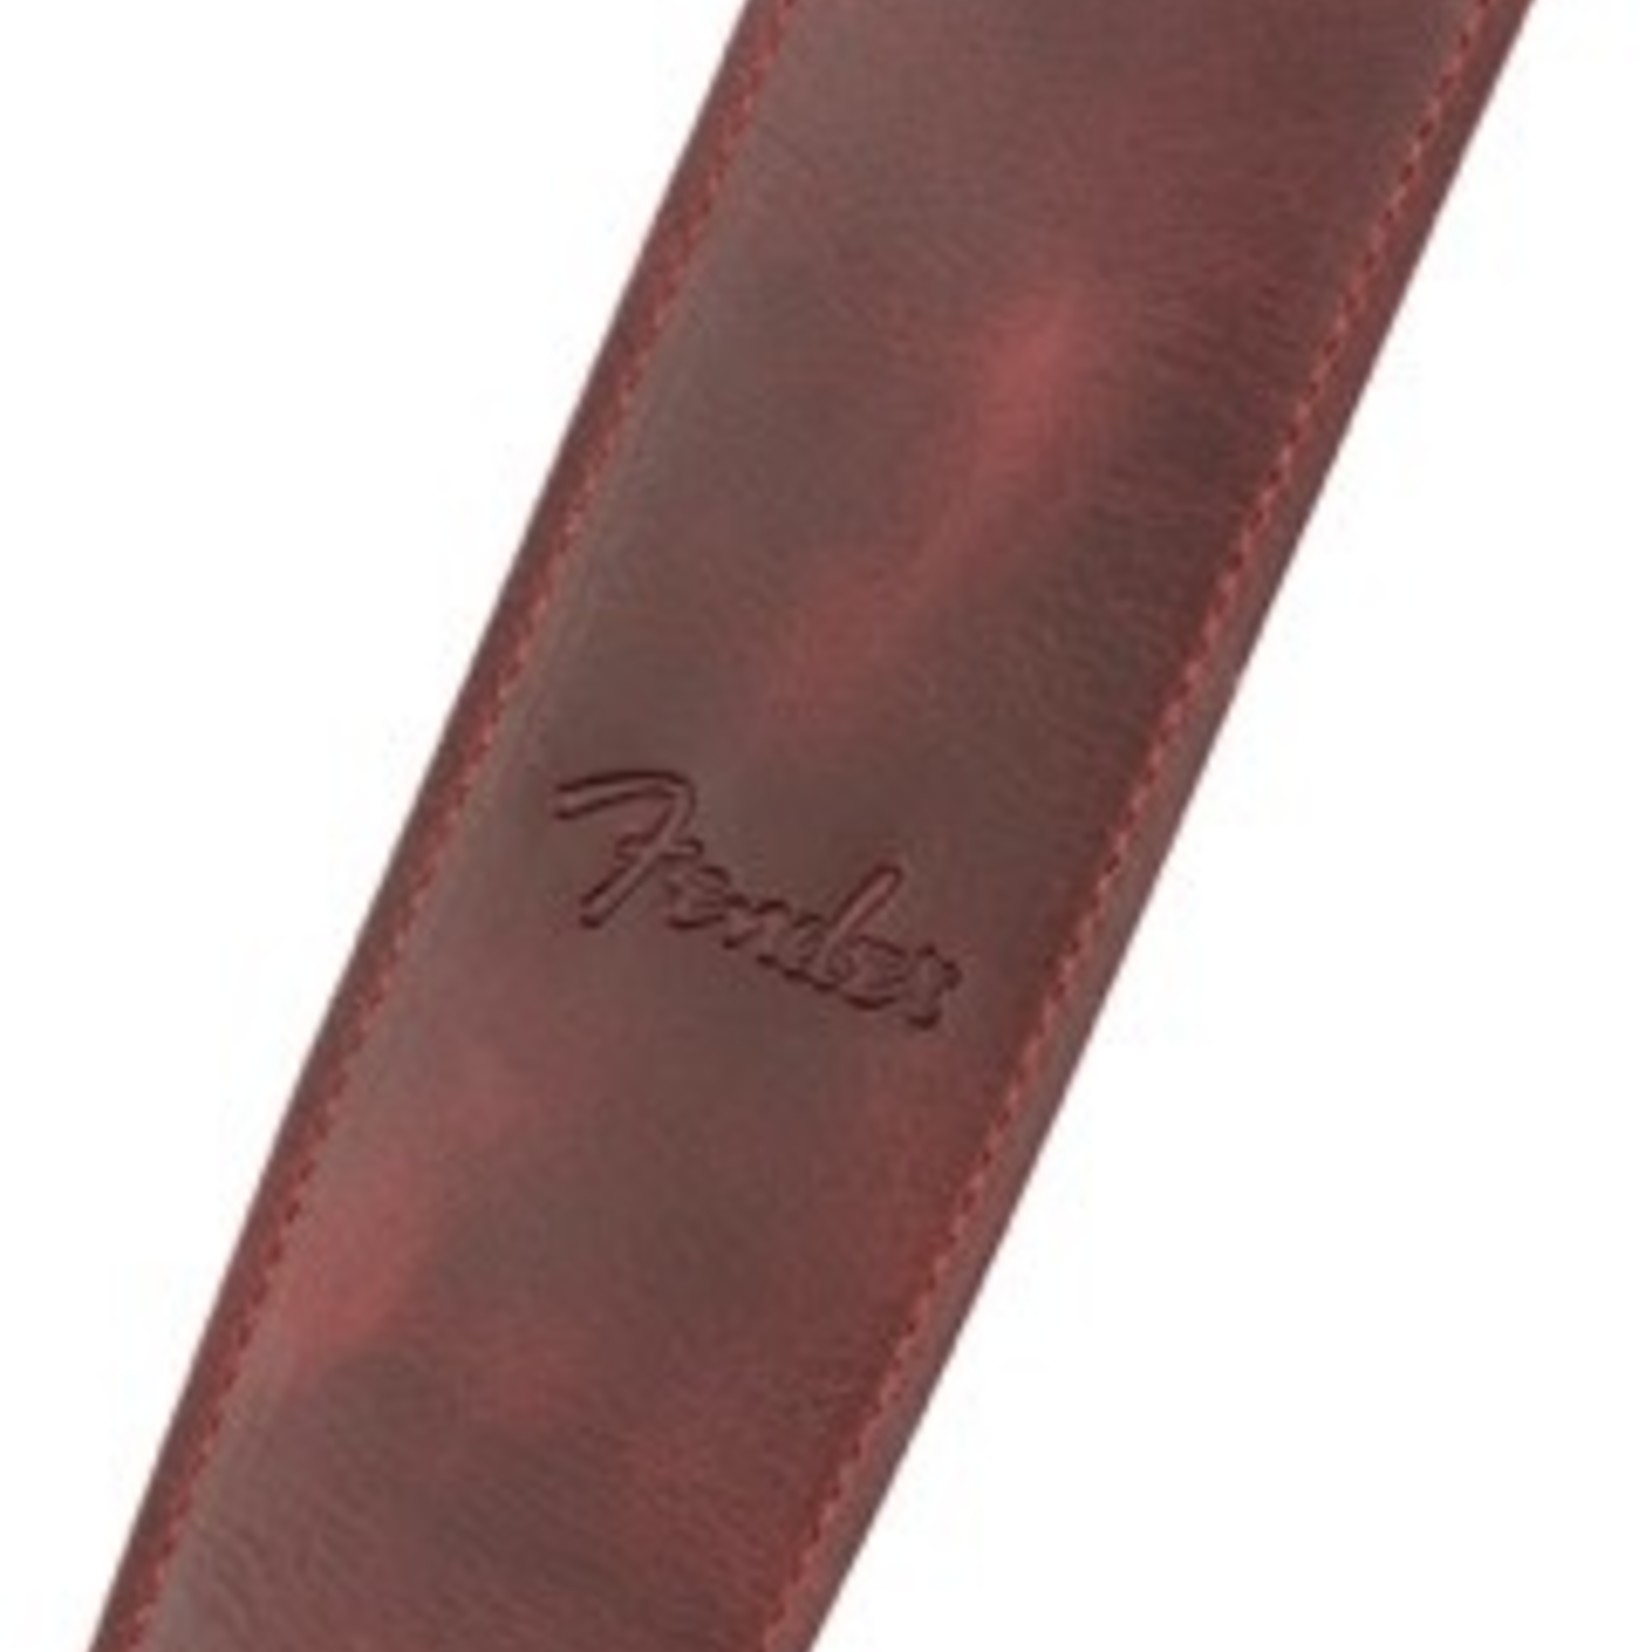 Fender Fender Limited Leather Strap, Oxblood